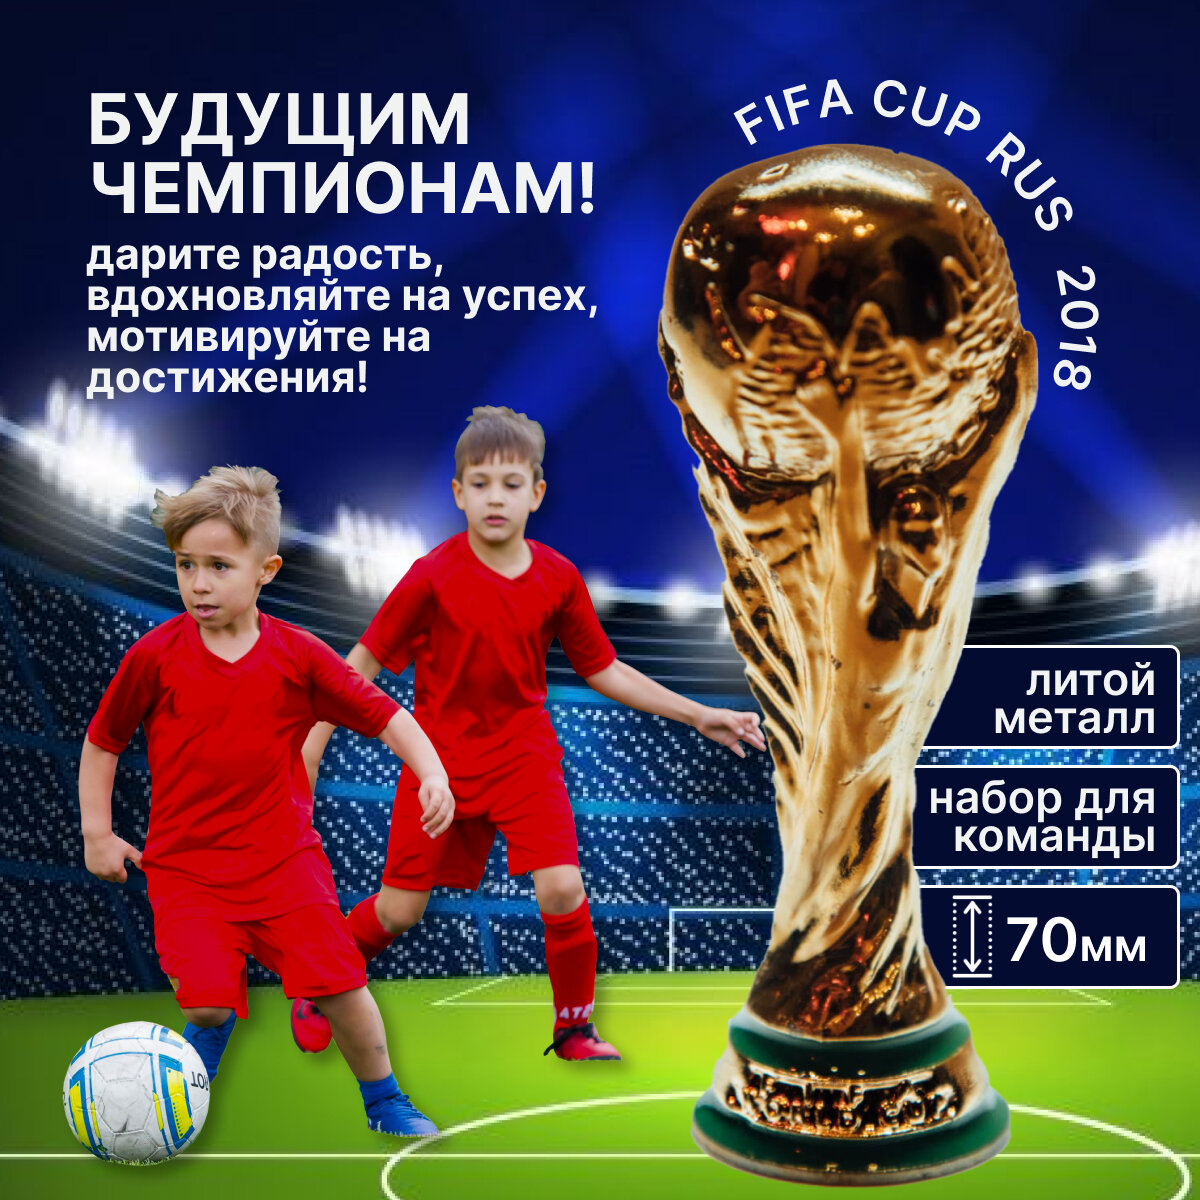 11 лицензионных кубков FIFA CUP RUS исторического ЧМ по футболу в РФ.